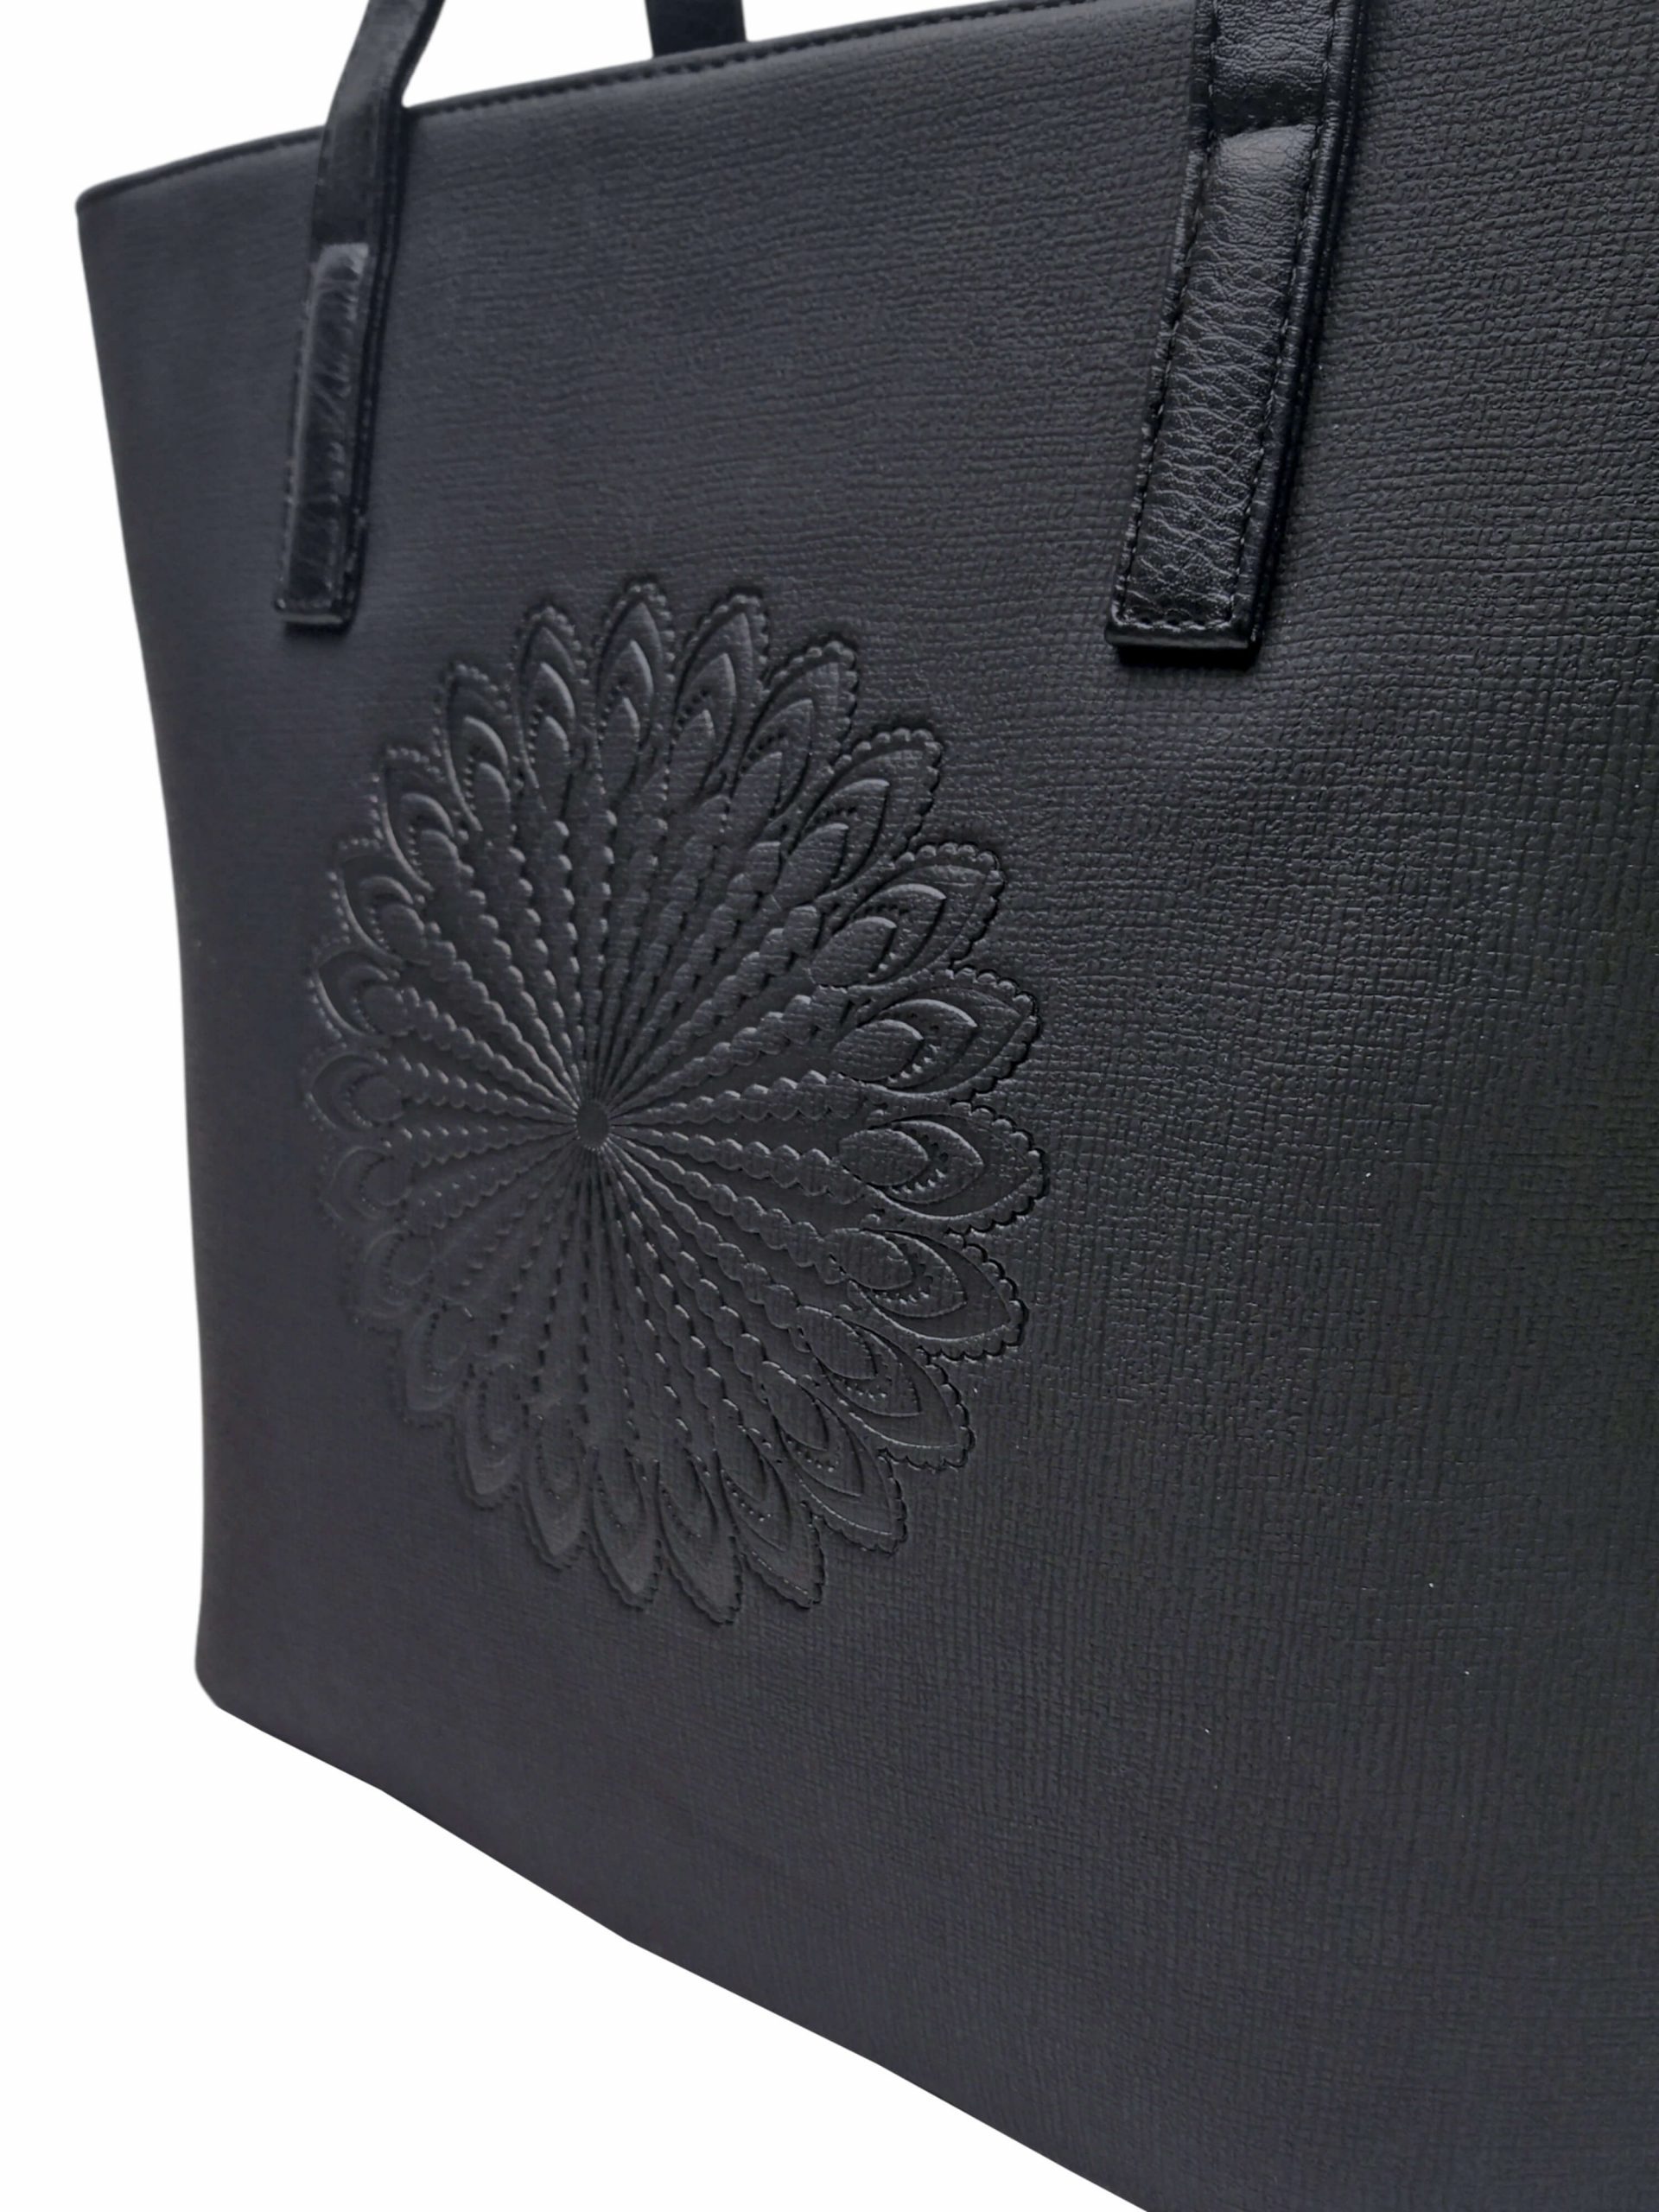 Černá dámská kabelka přes rameno s texturou, Tapple, H17409, detail zadní strany kabelky přes rameno